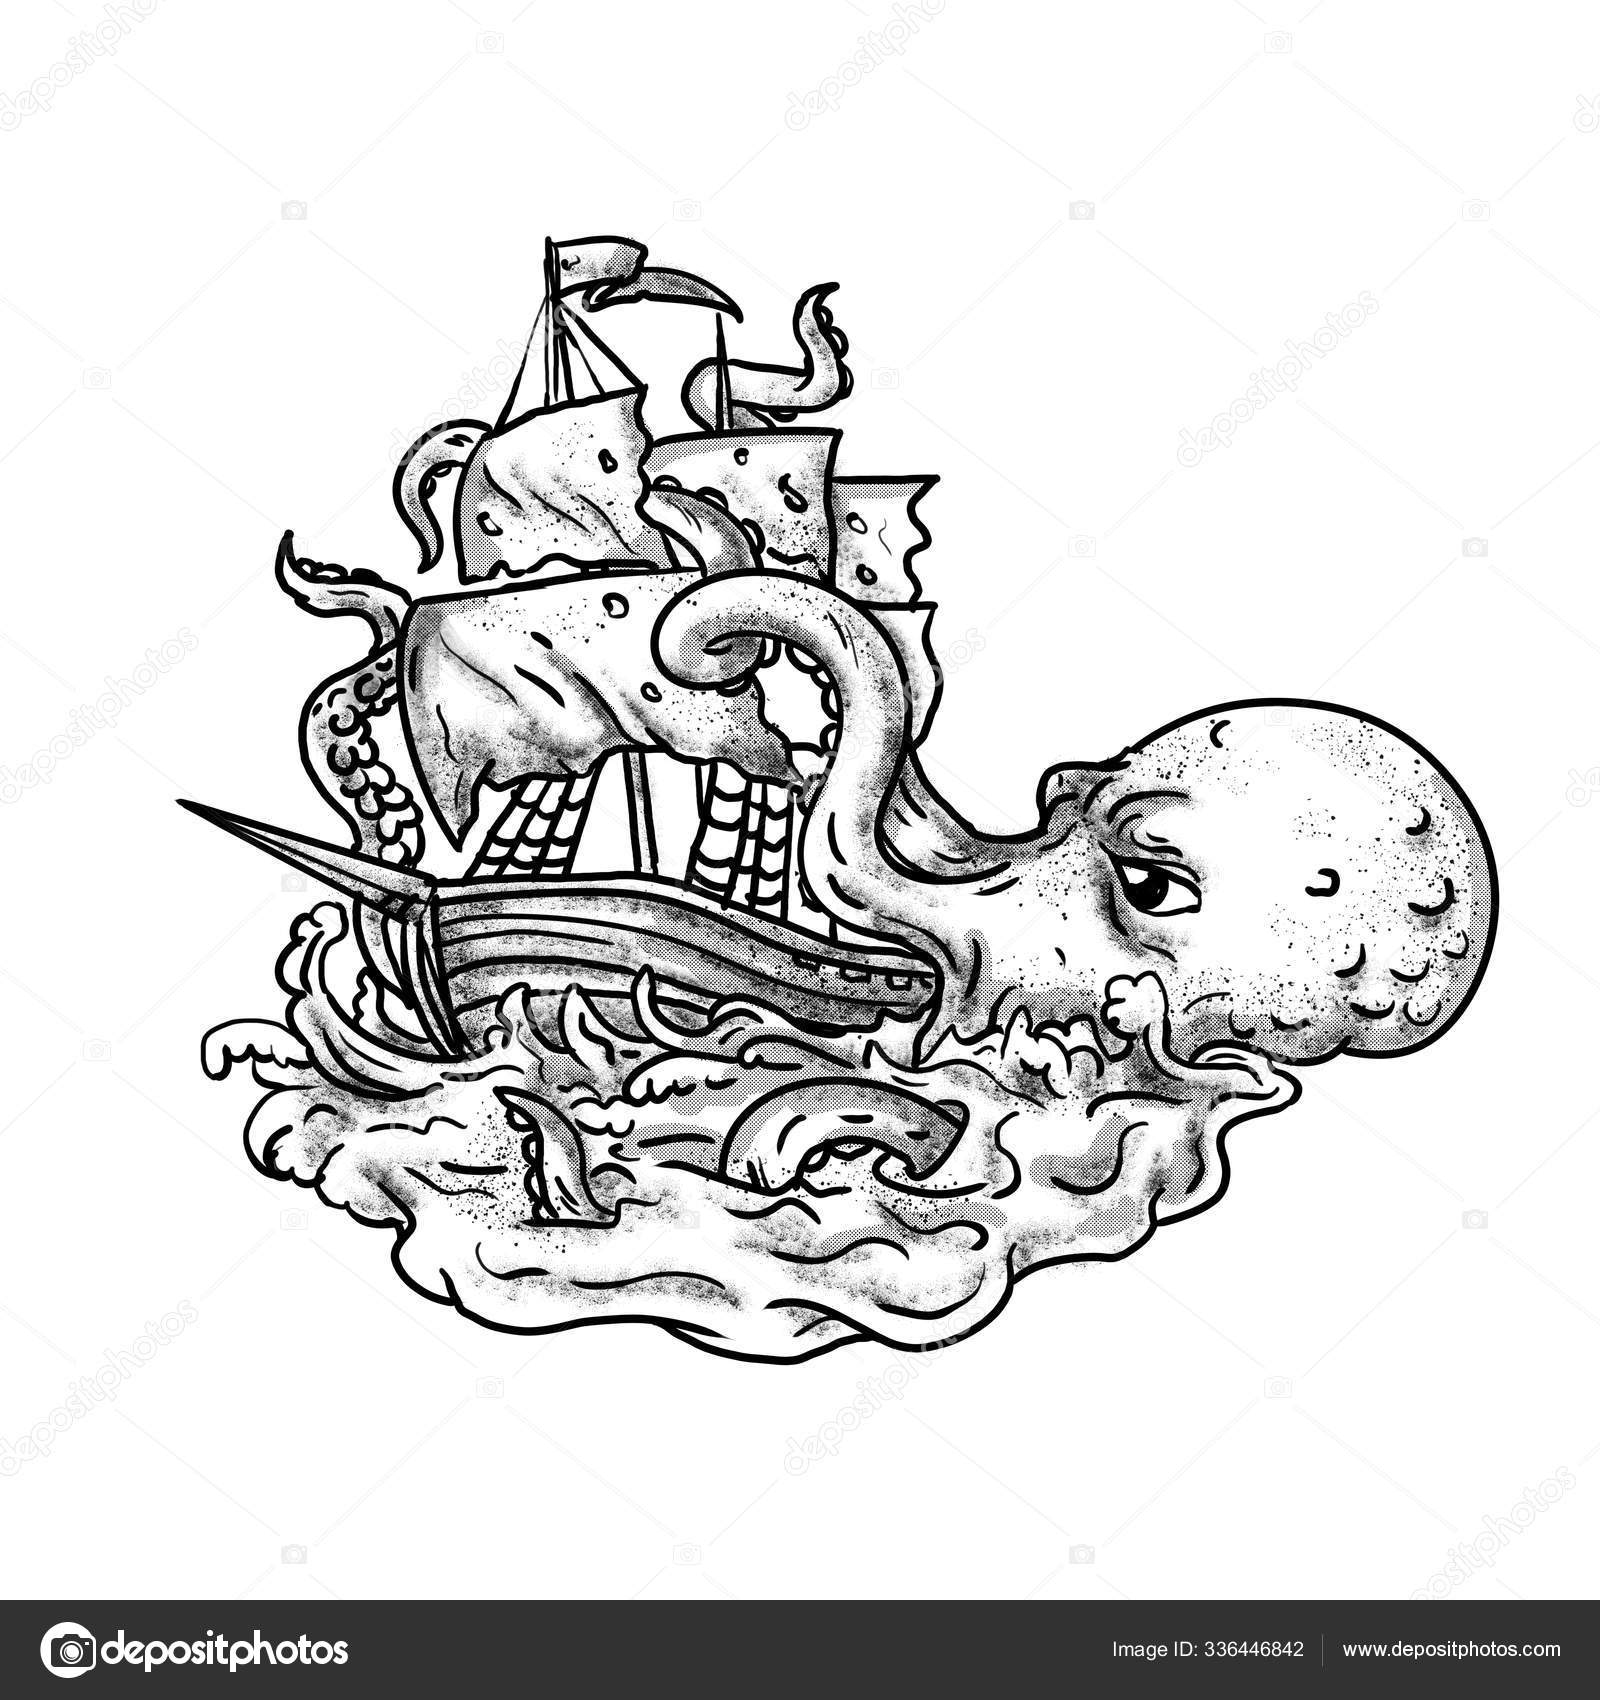 Símbolo Kraken Lendário Monstro Do Mar Ilustração do Vetor